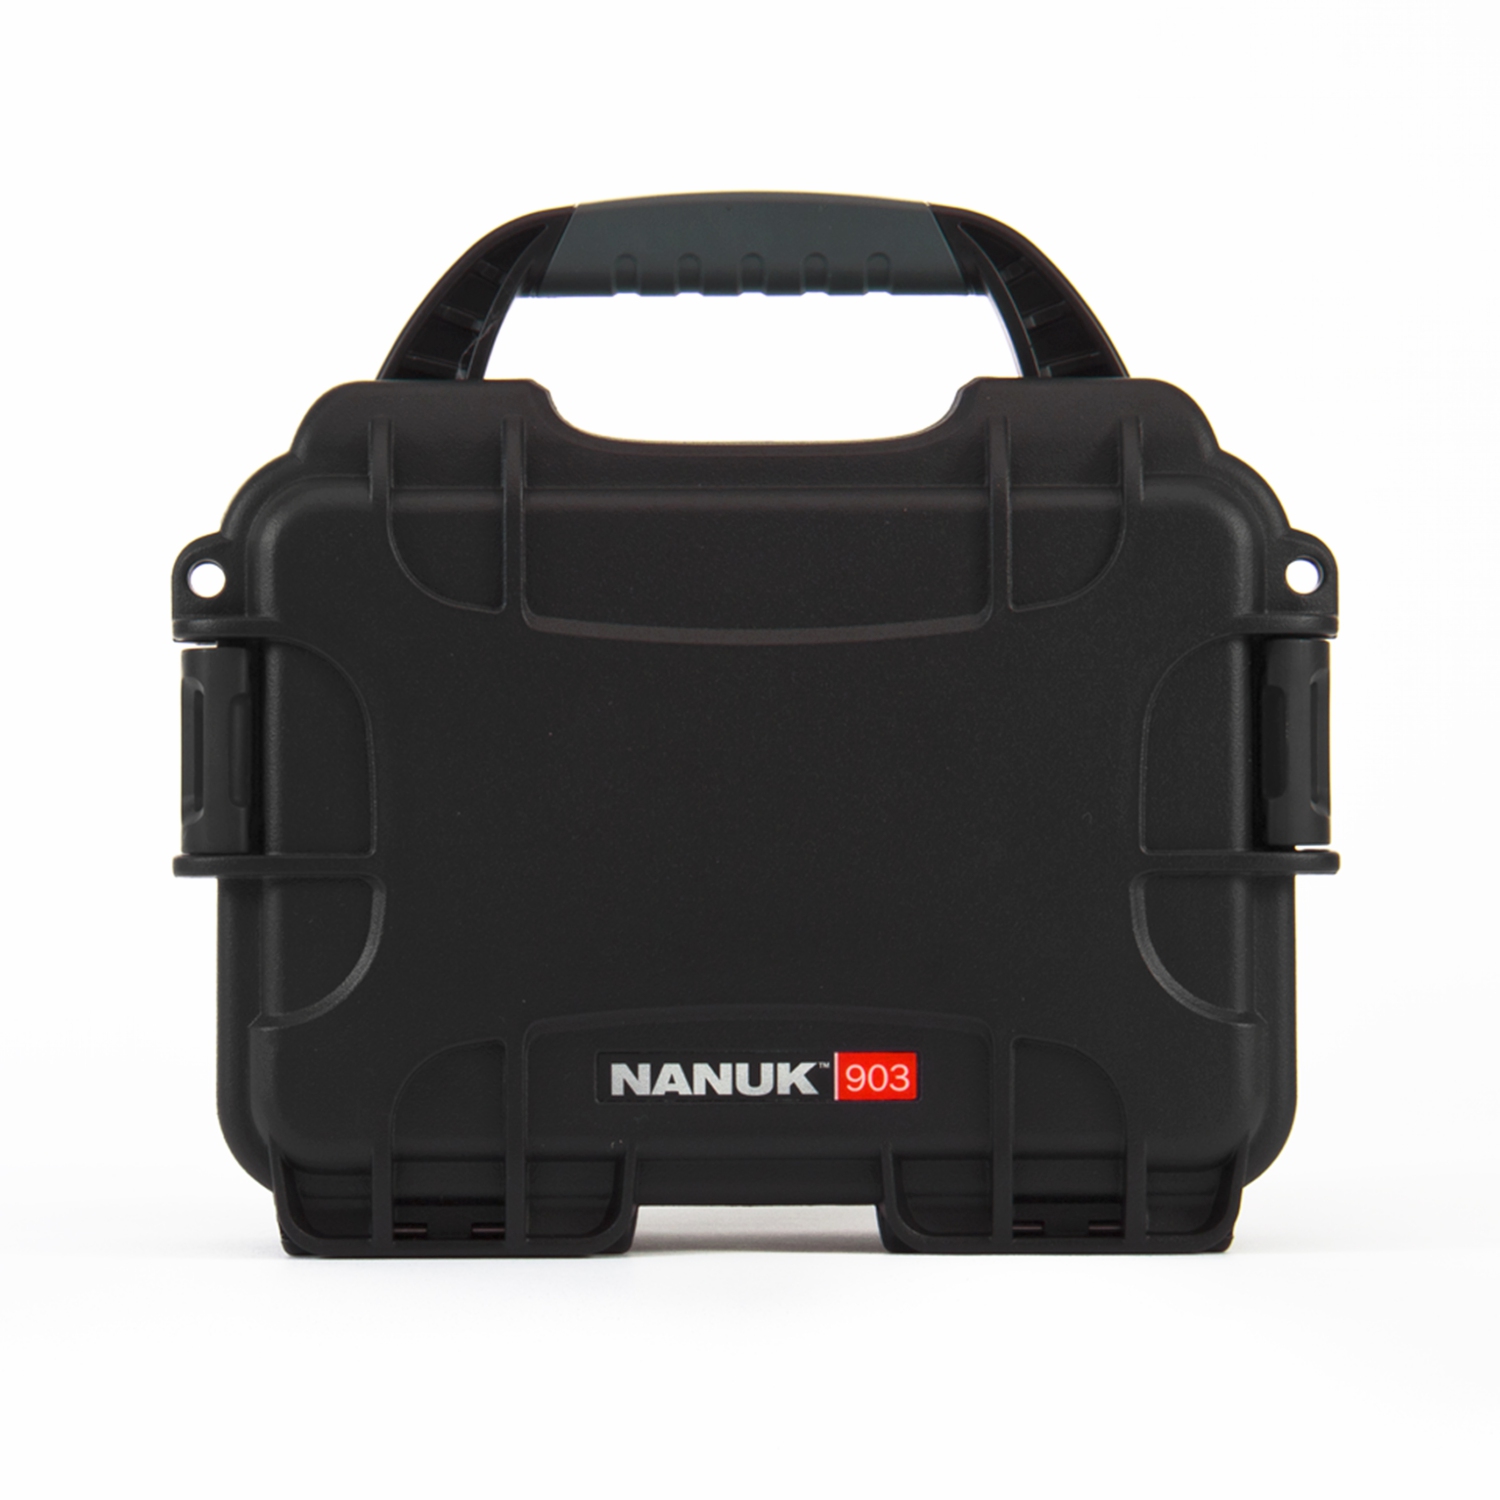 Nanuk 903 Waterproof Hard Case with Foam Insert - Black